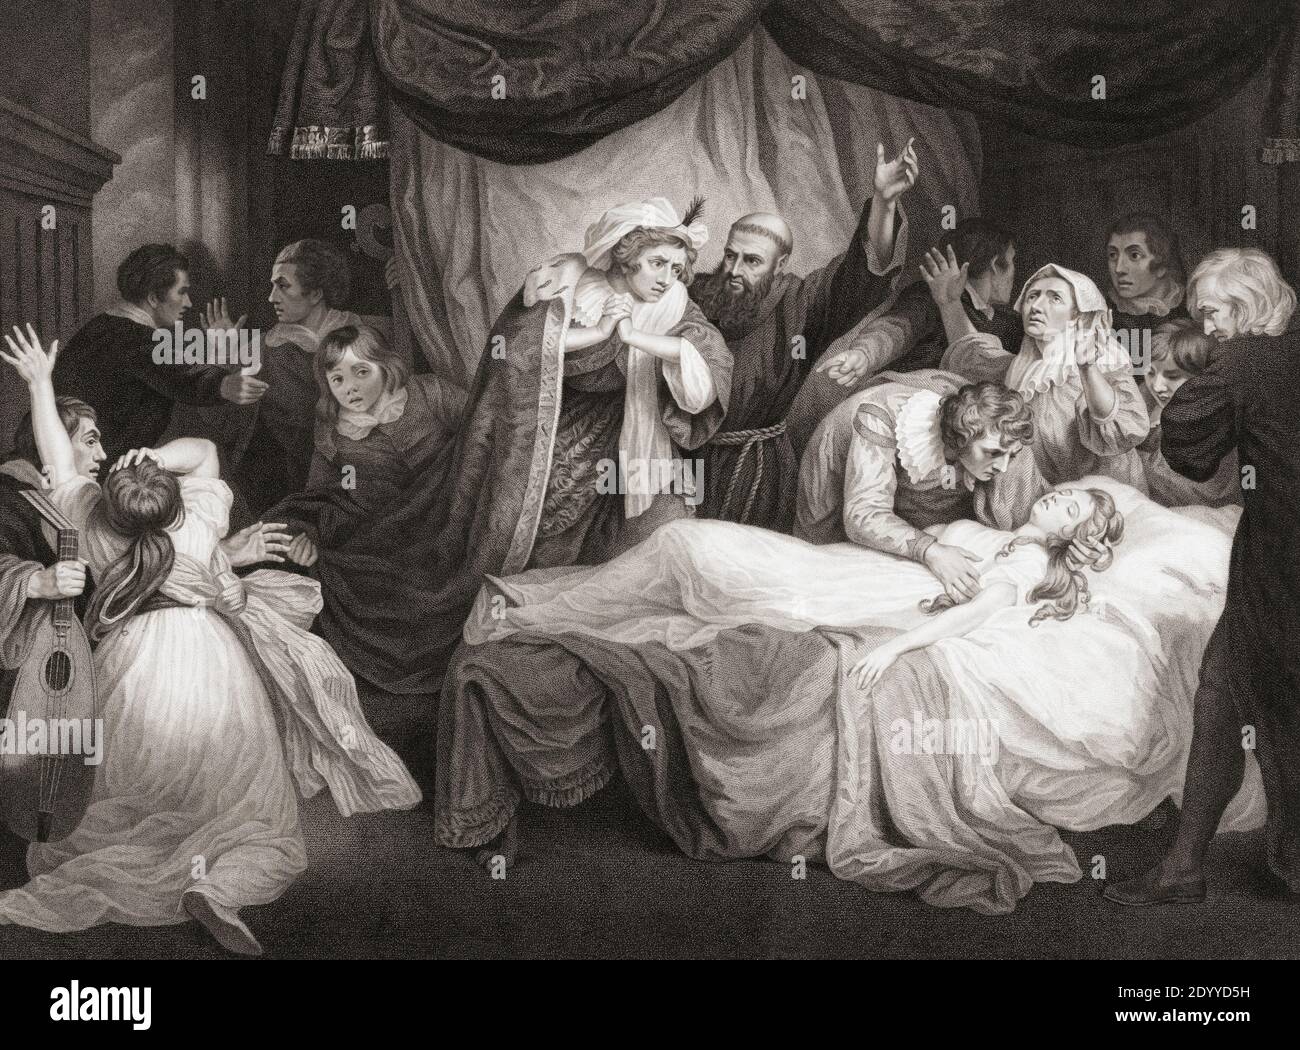 Illustrazione della commedia di William Shakespeare Romeo and Juliet, atto IV, scena V. da un'incisione del XVIII secolo di Georg Facius e Johann Facius dopo un'opera di John Opie. Foto Stock